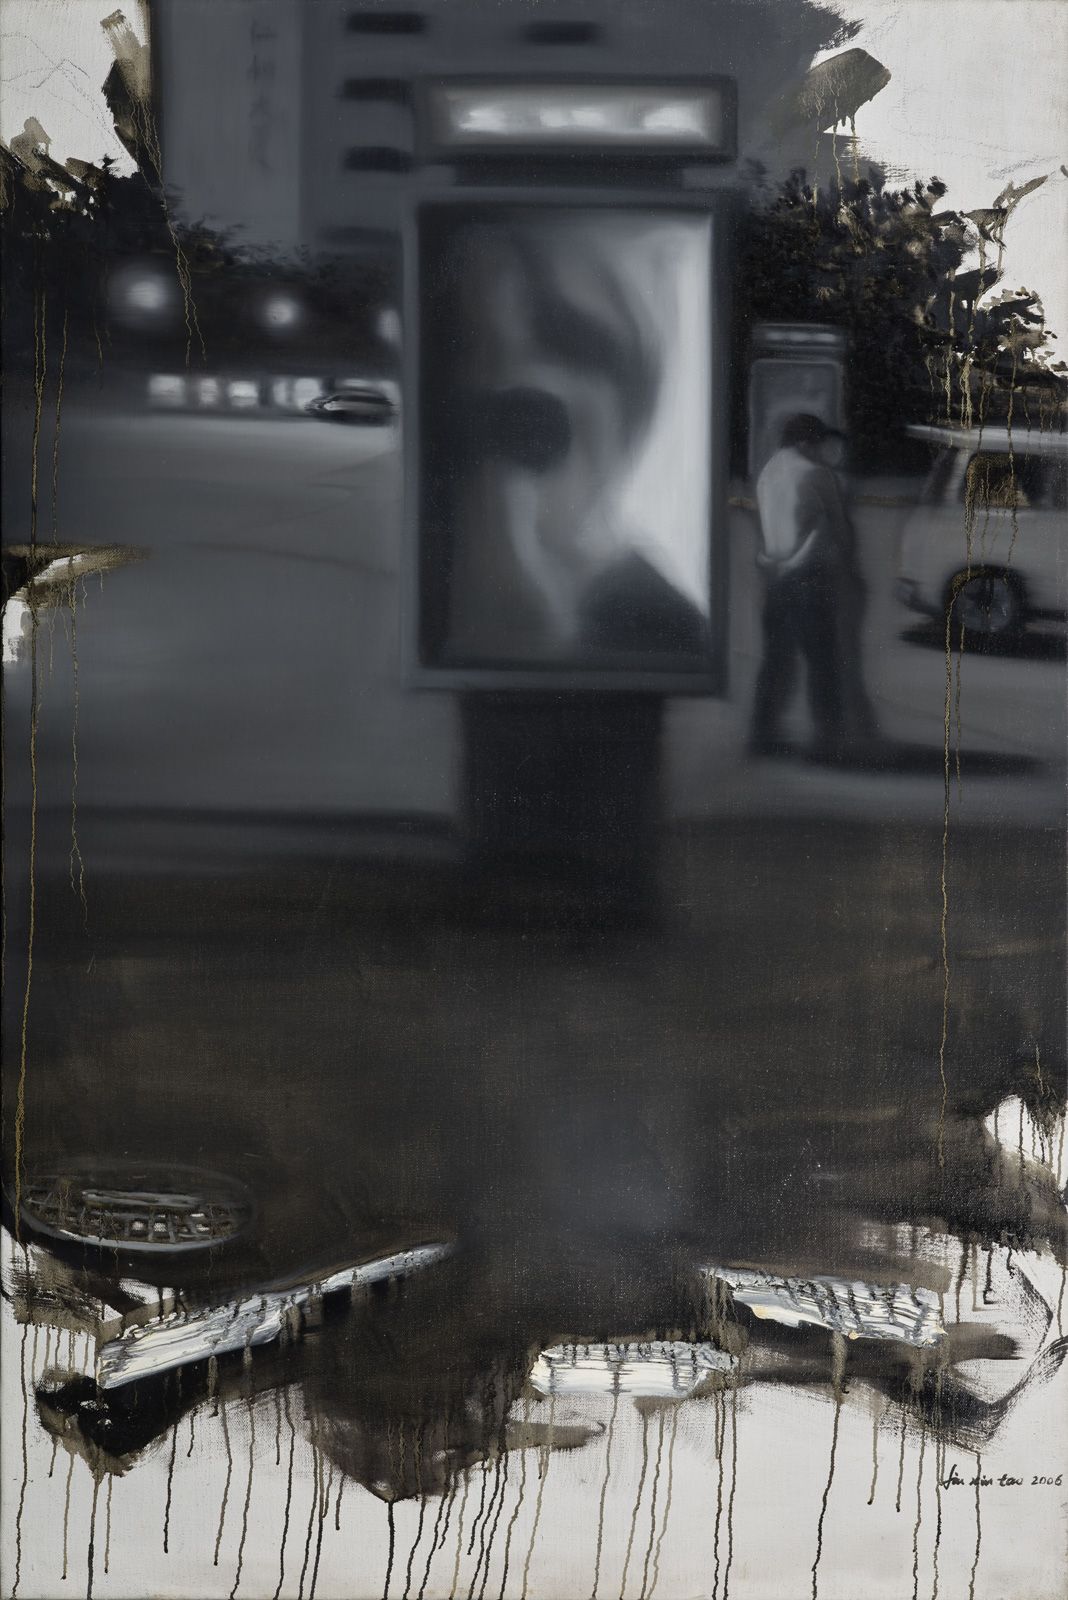 LIU XINTAO (1968) 
2006年N°19系列散场夜。

布面油画，右下角有签名并注明日期2006年

150 x 100厘米





刘新涛（&hellip;